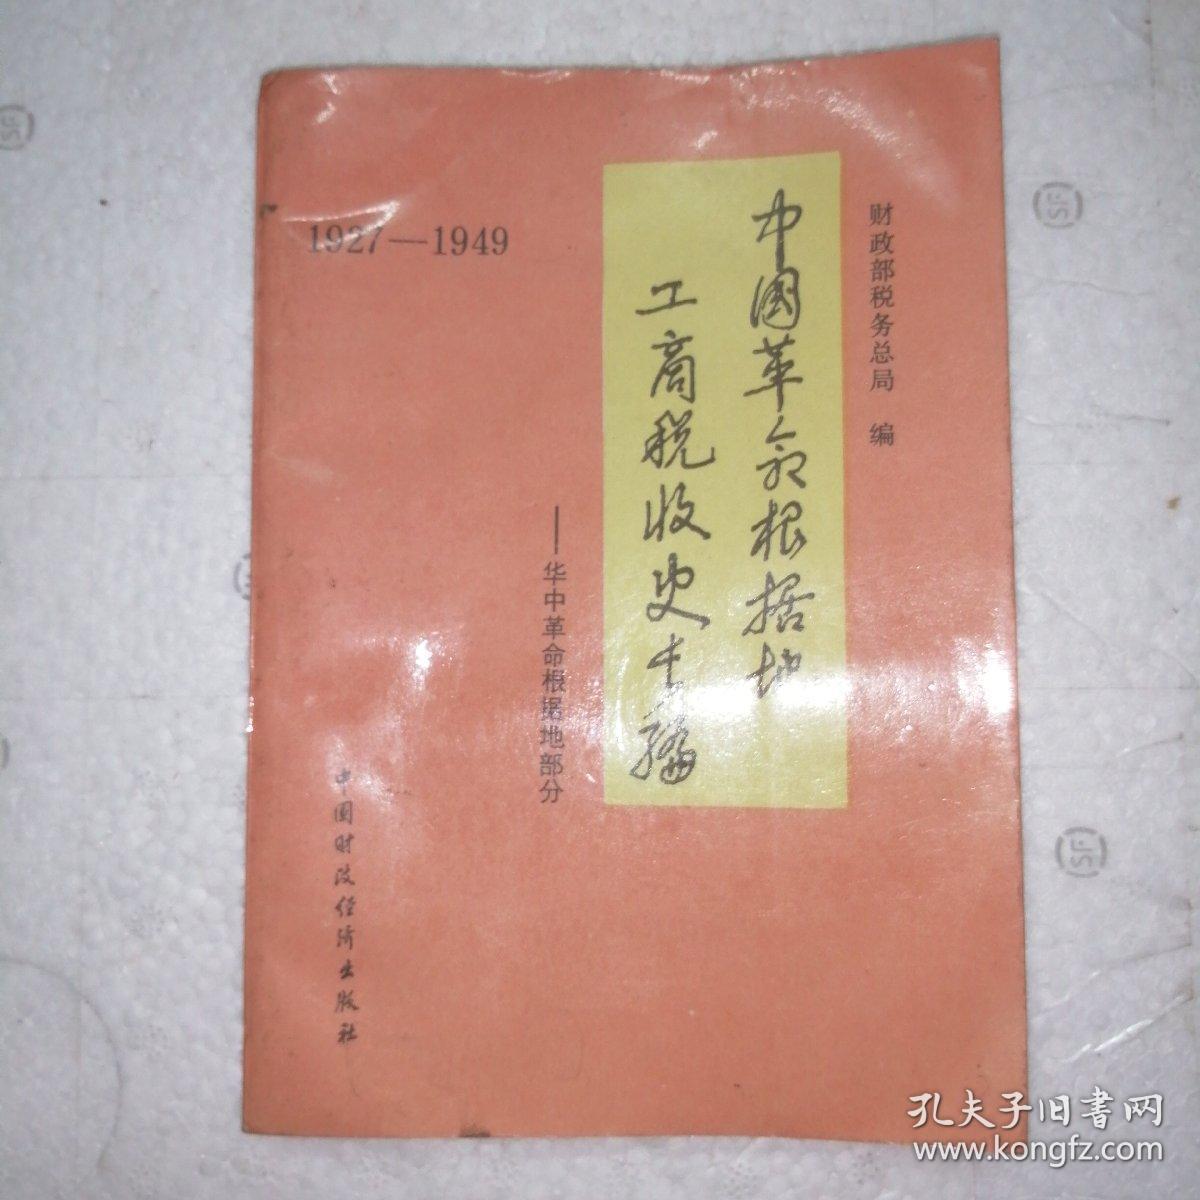 中国革命根据地工商税收史长编1927-1949。华中革命根据地部分